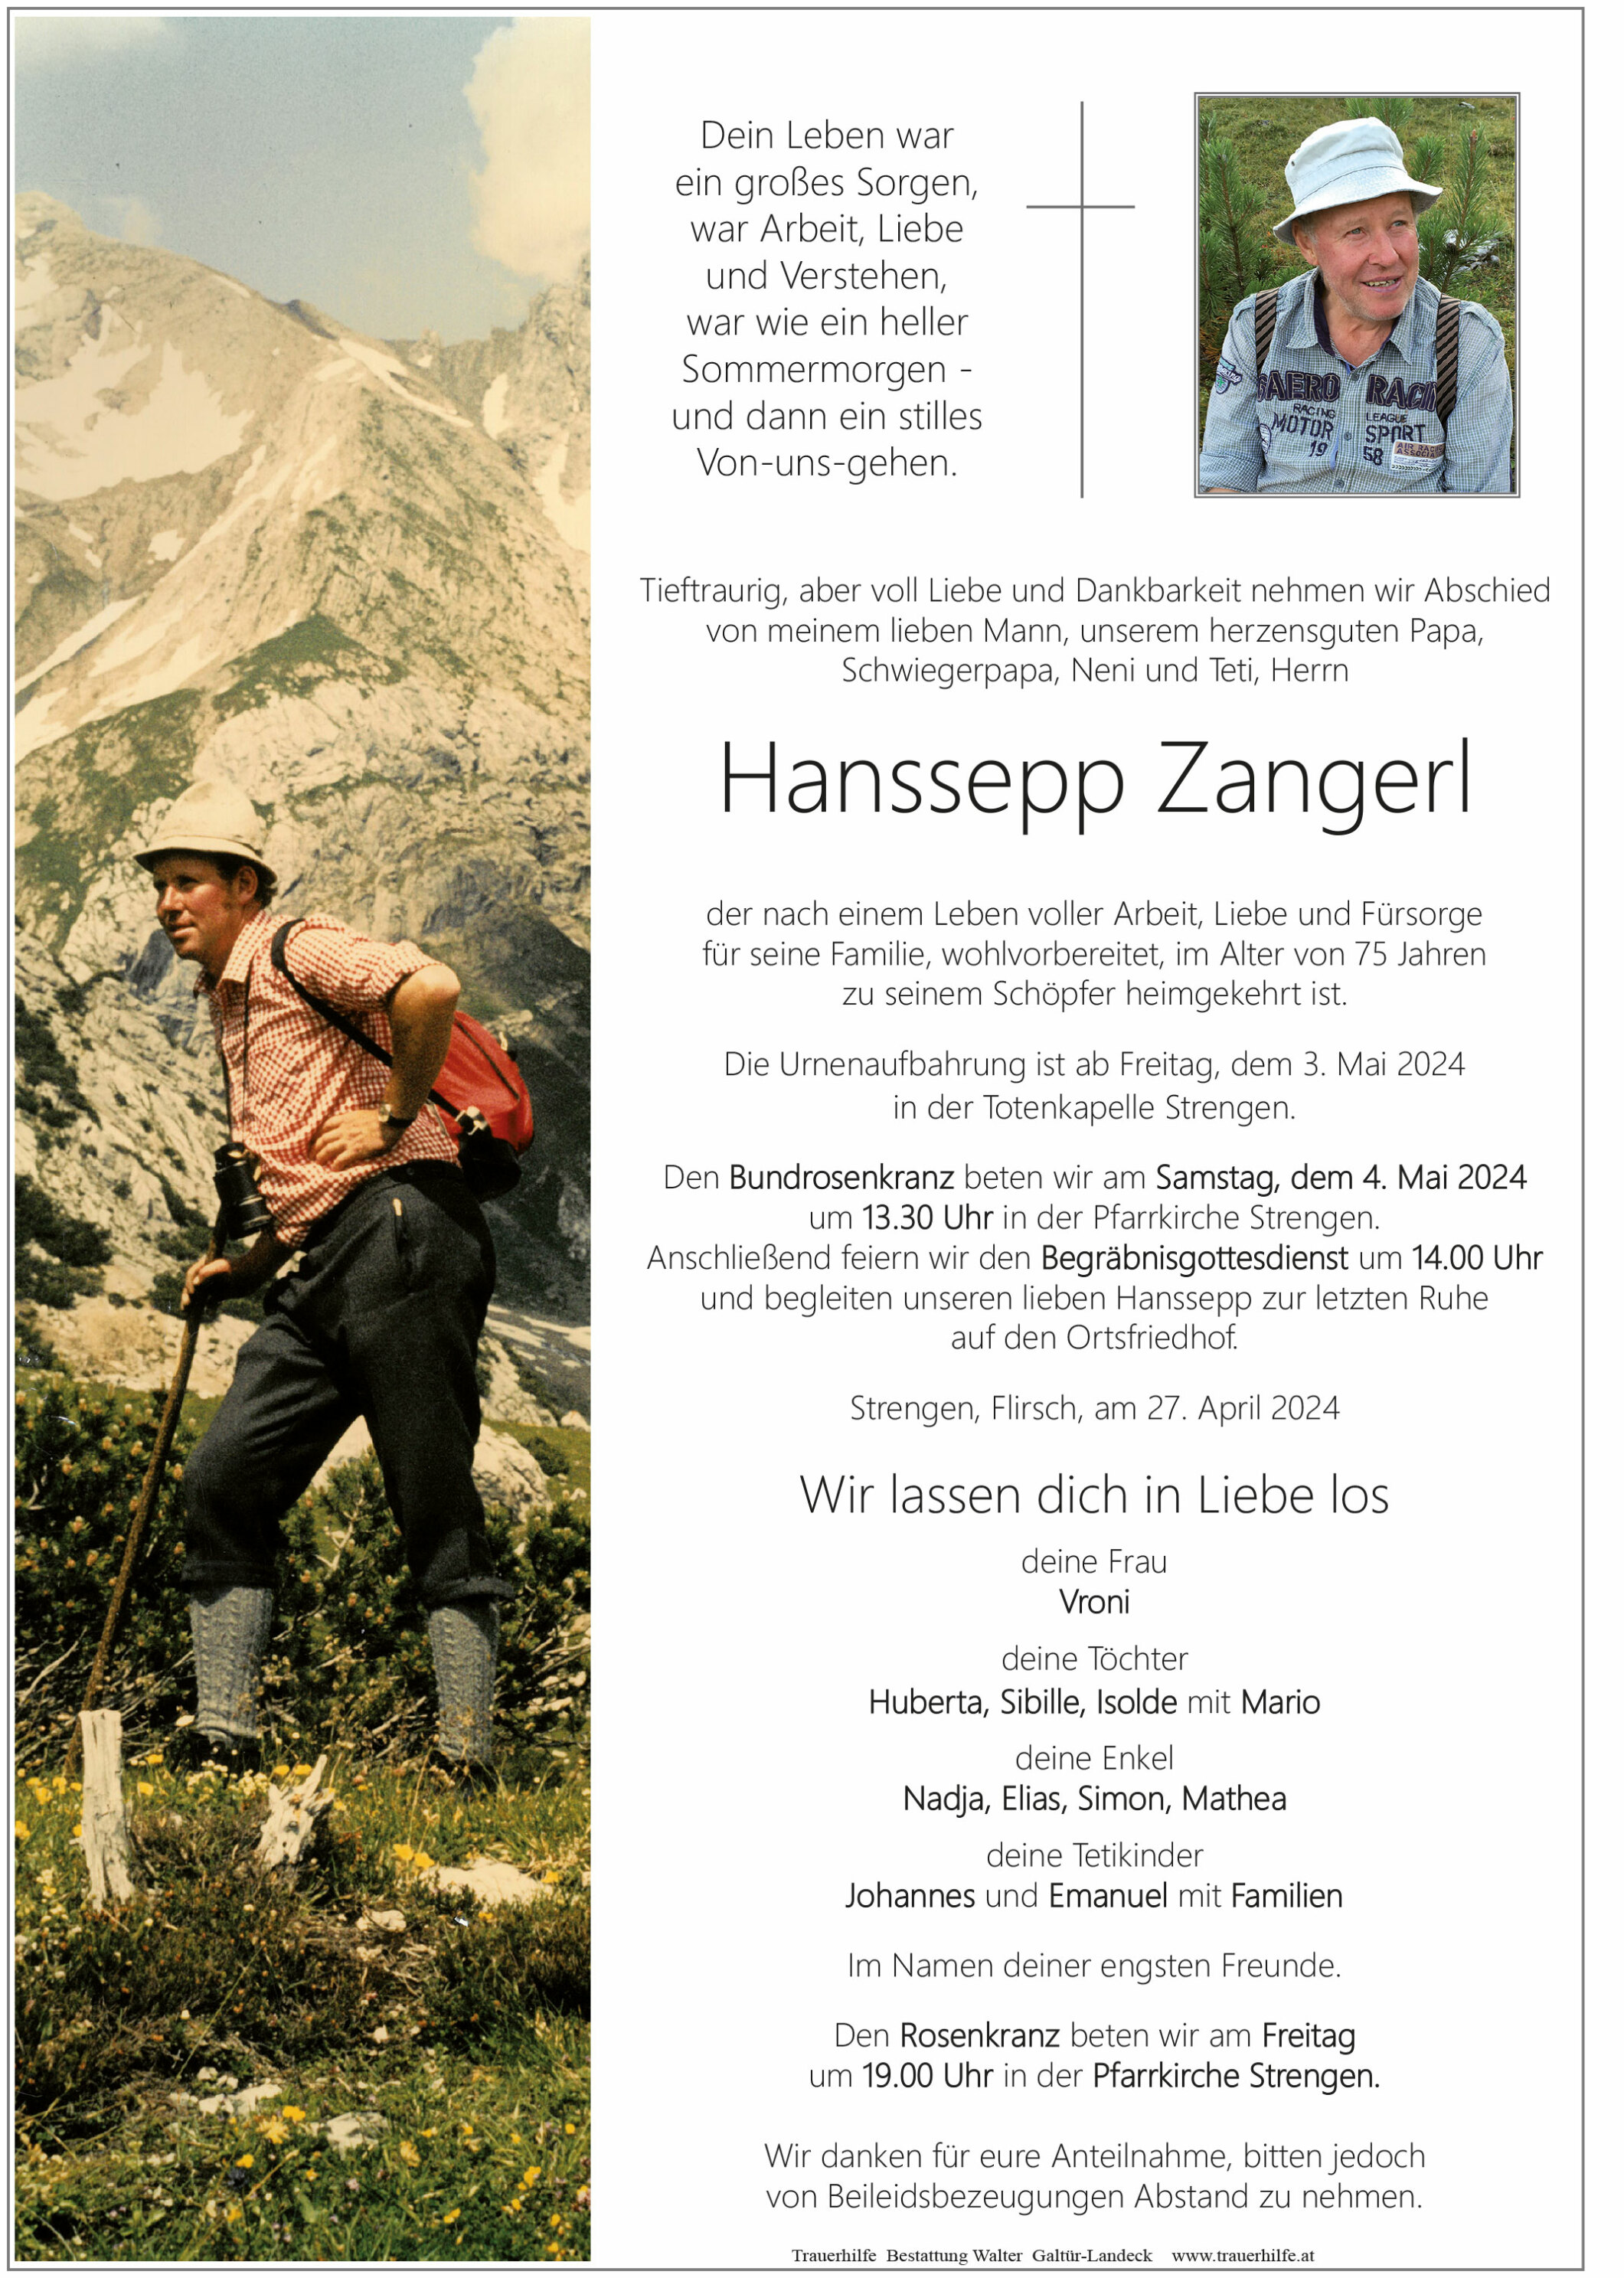 Hanssepp Zangerl